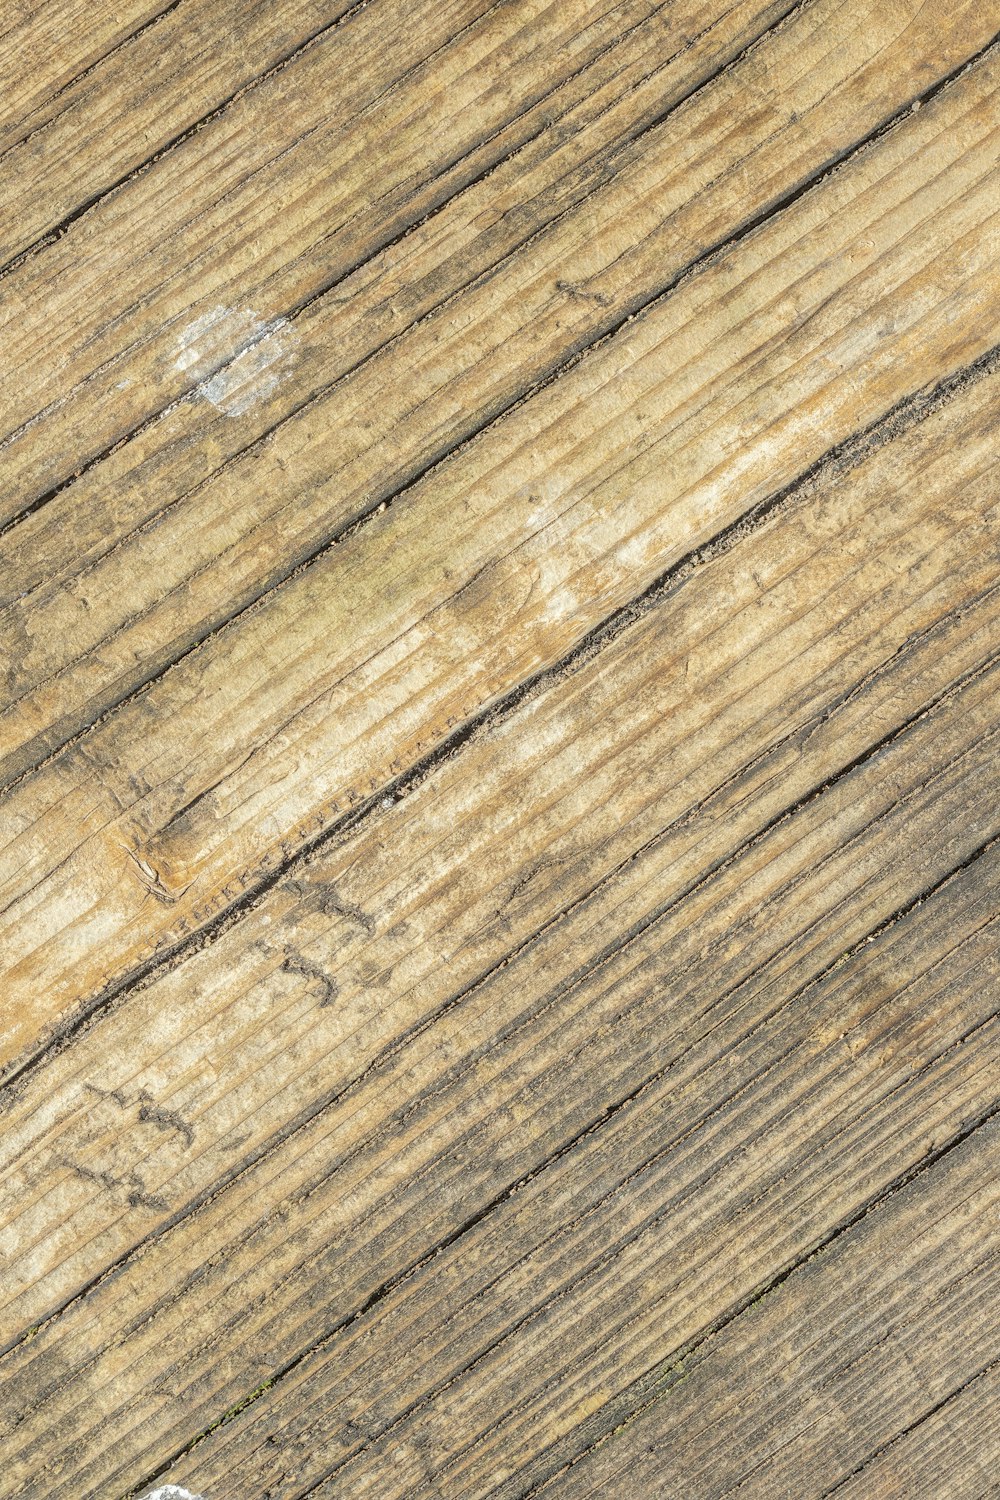 une personne faisant de la planche à roulettes sur une surface en bois